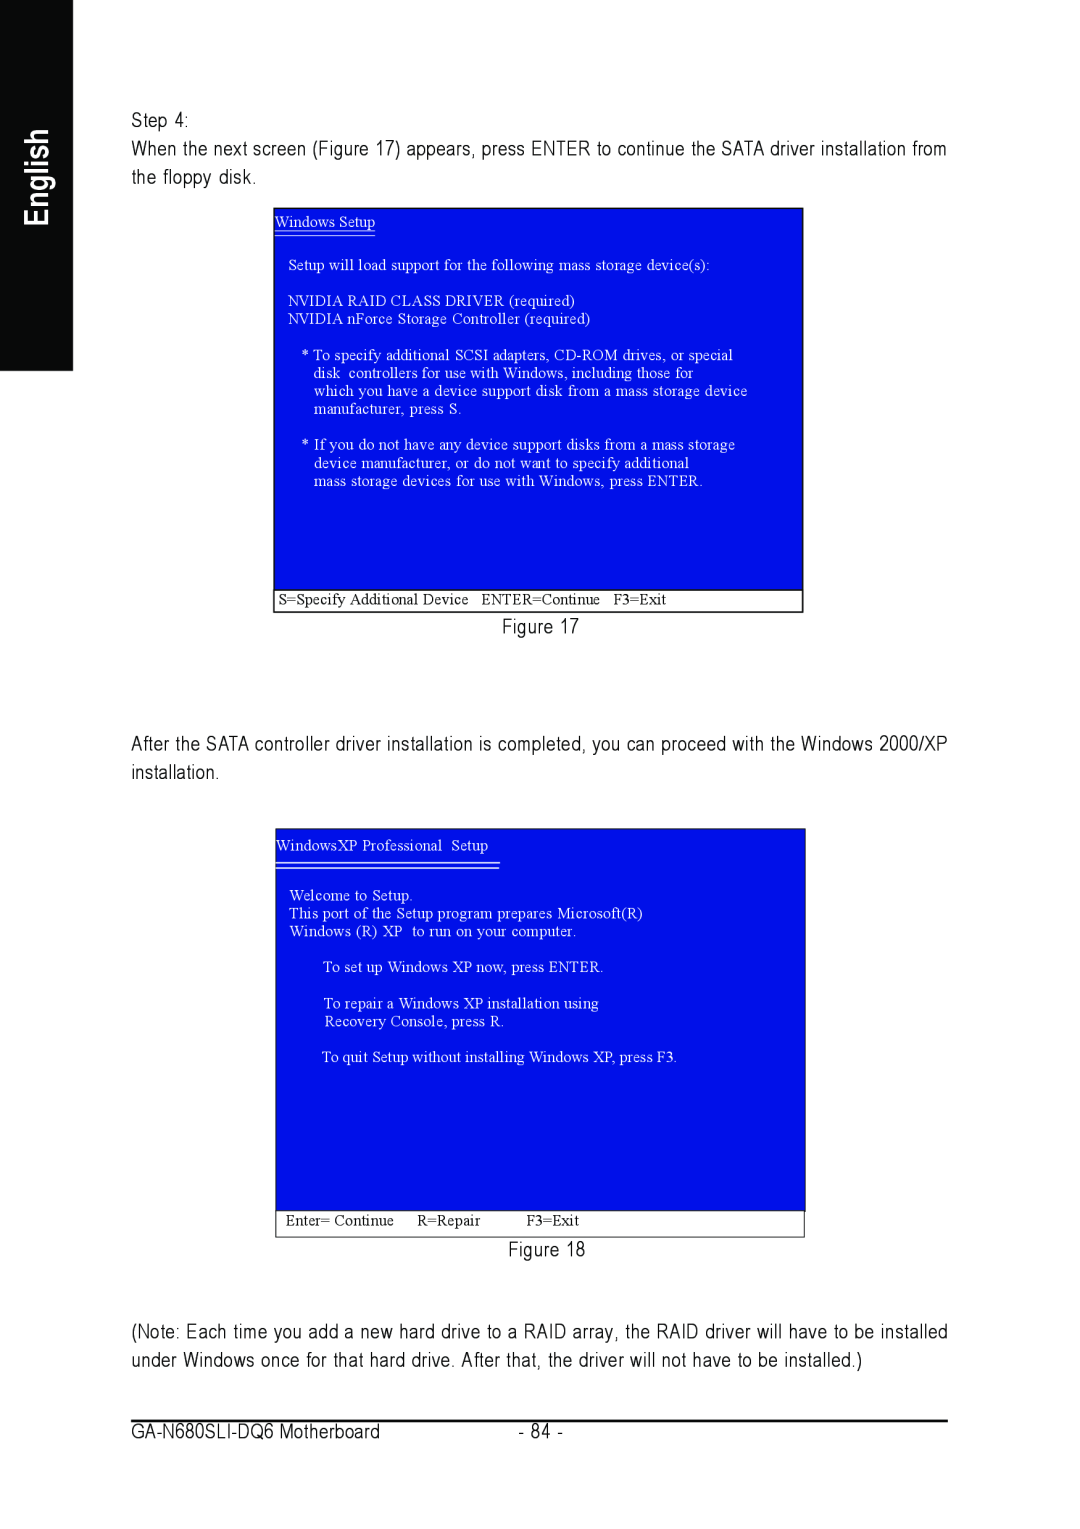 Intel GA-N680SLI-DQ6 user manual English 